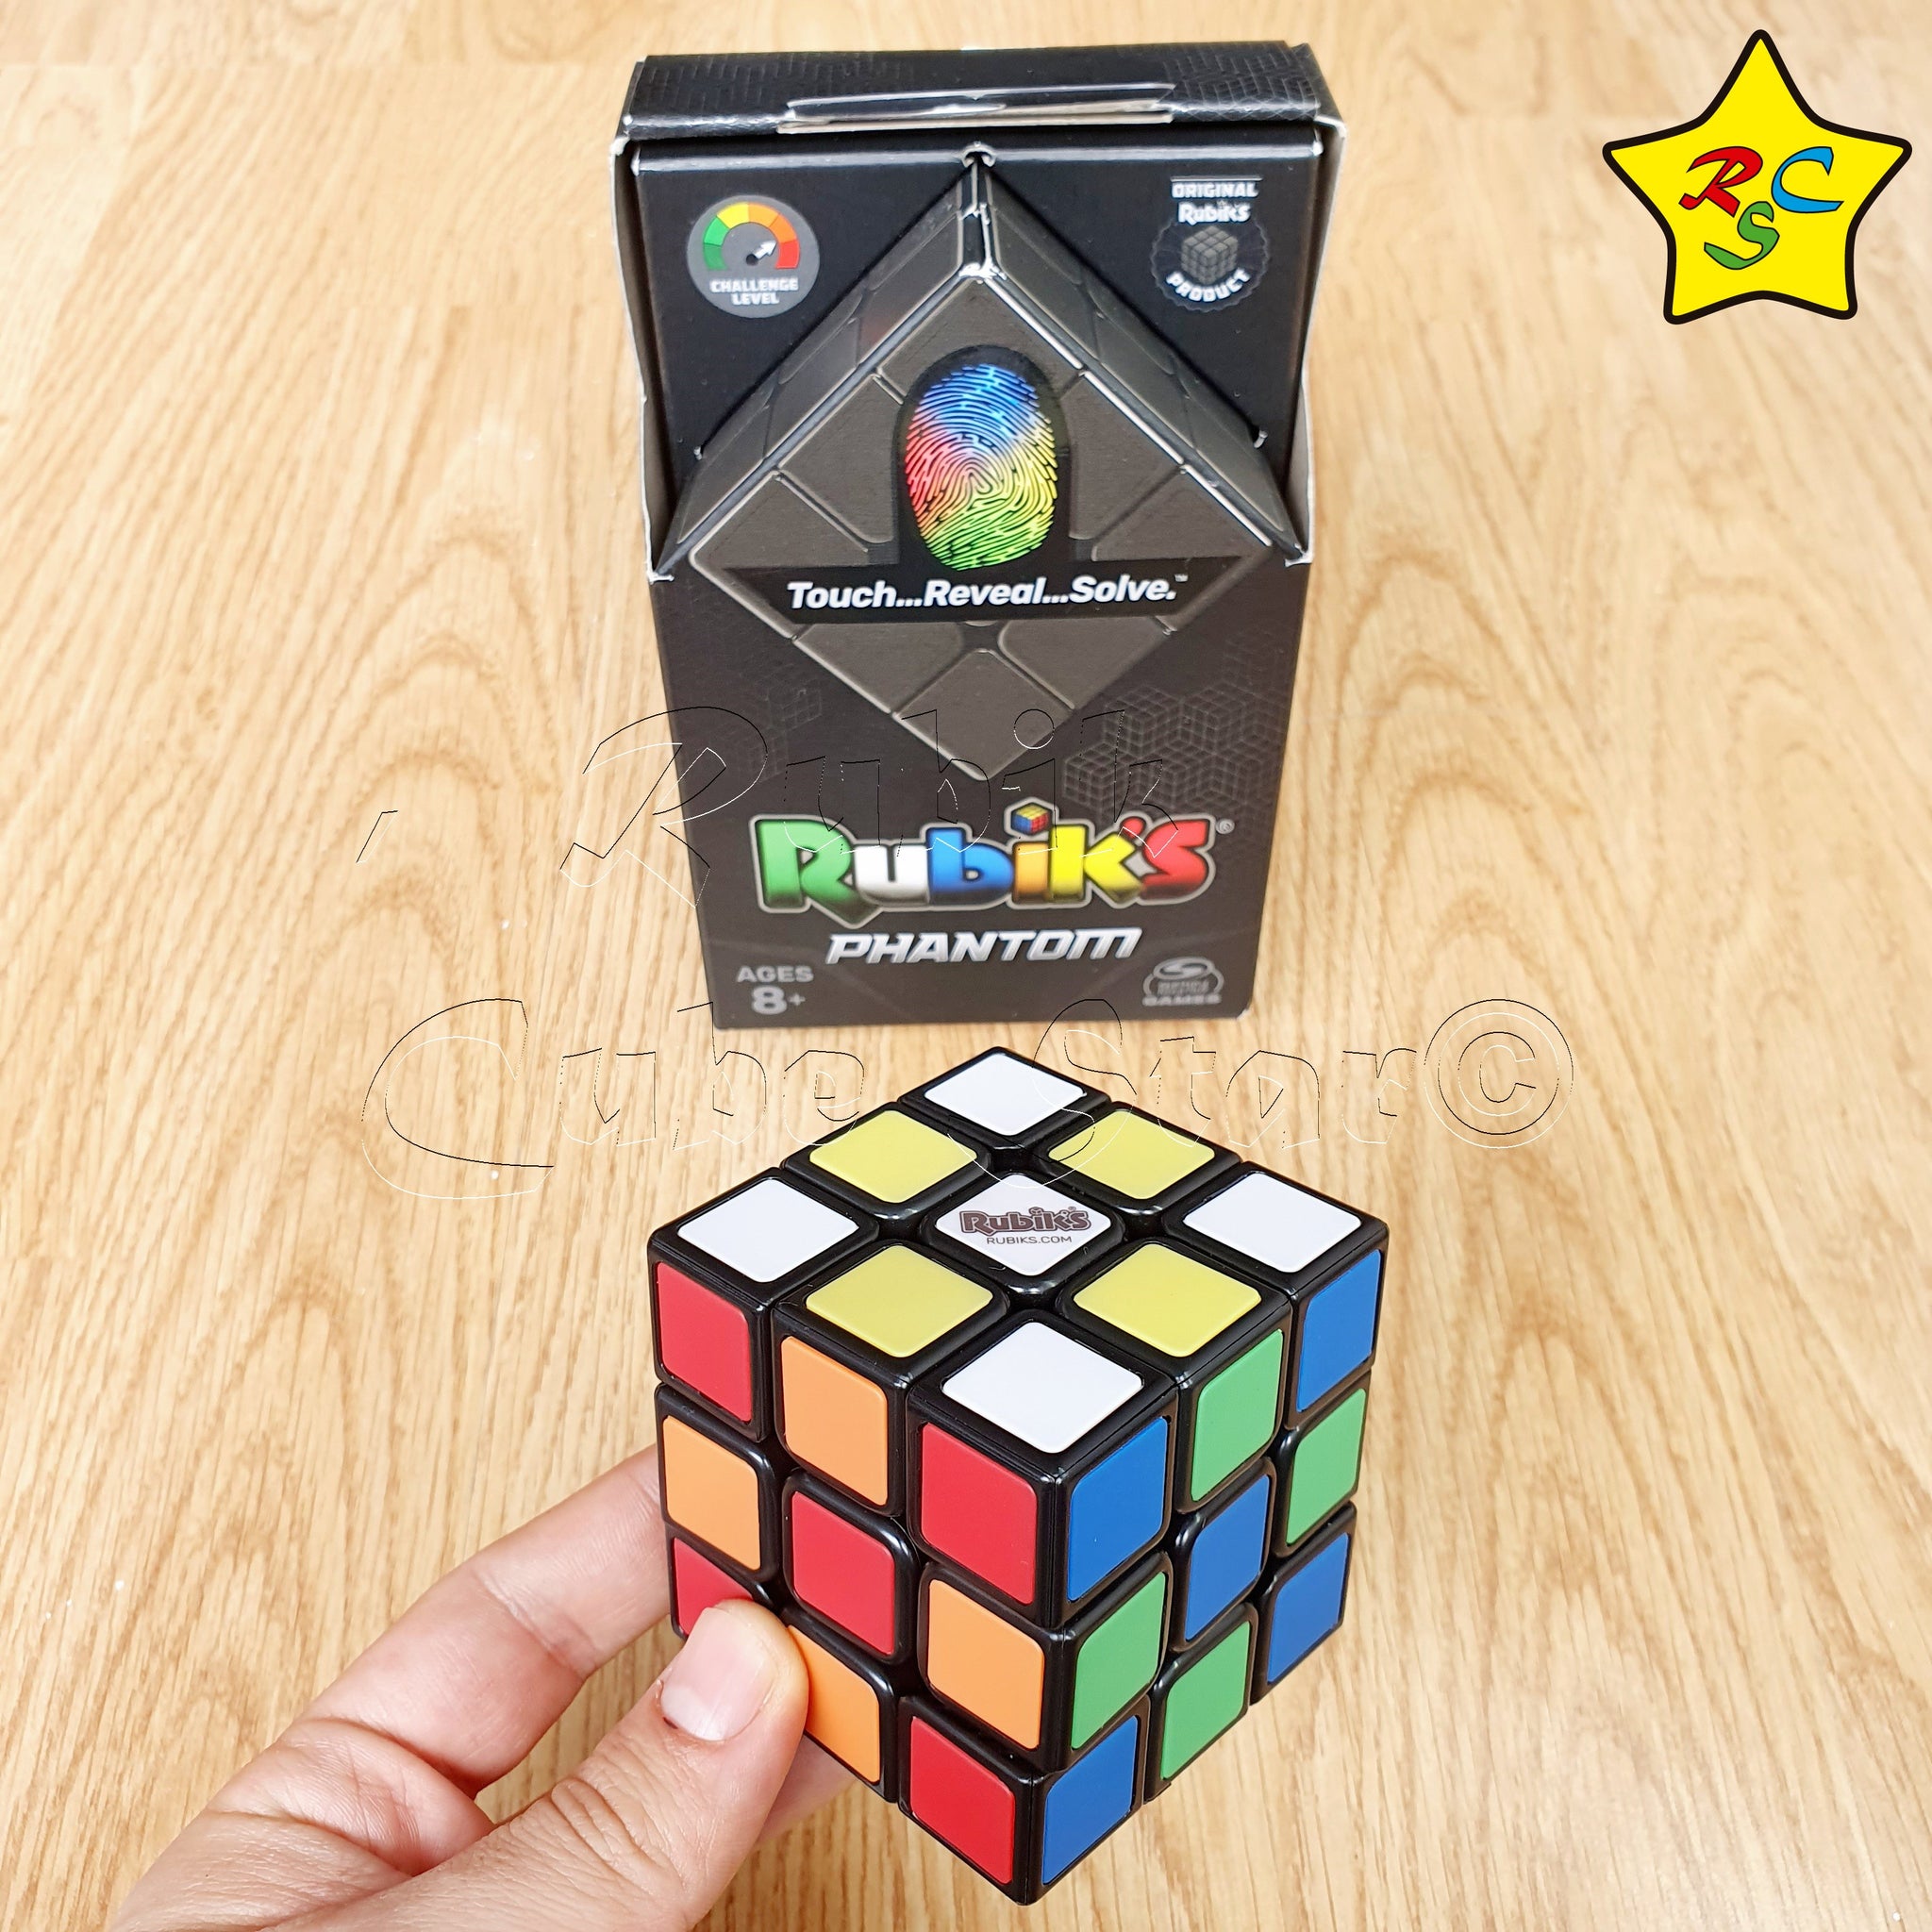 Venta De Cubos Rubik Cubo Rubik's 3x3 Phantom Hasbro Original Fantasma Color – Rubik Cube Star